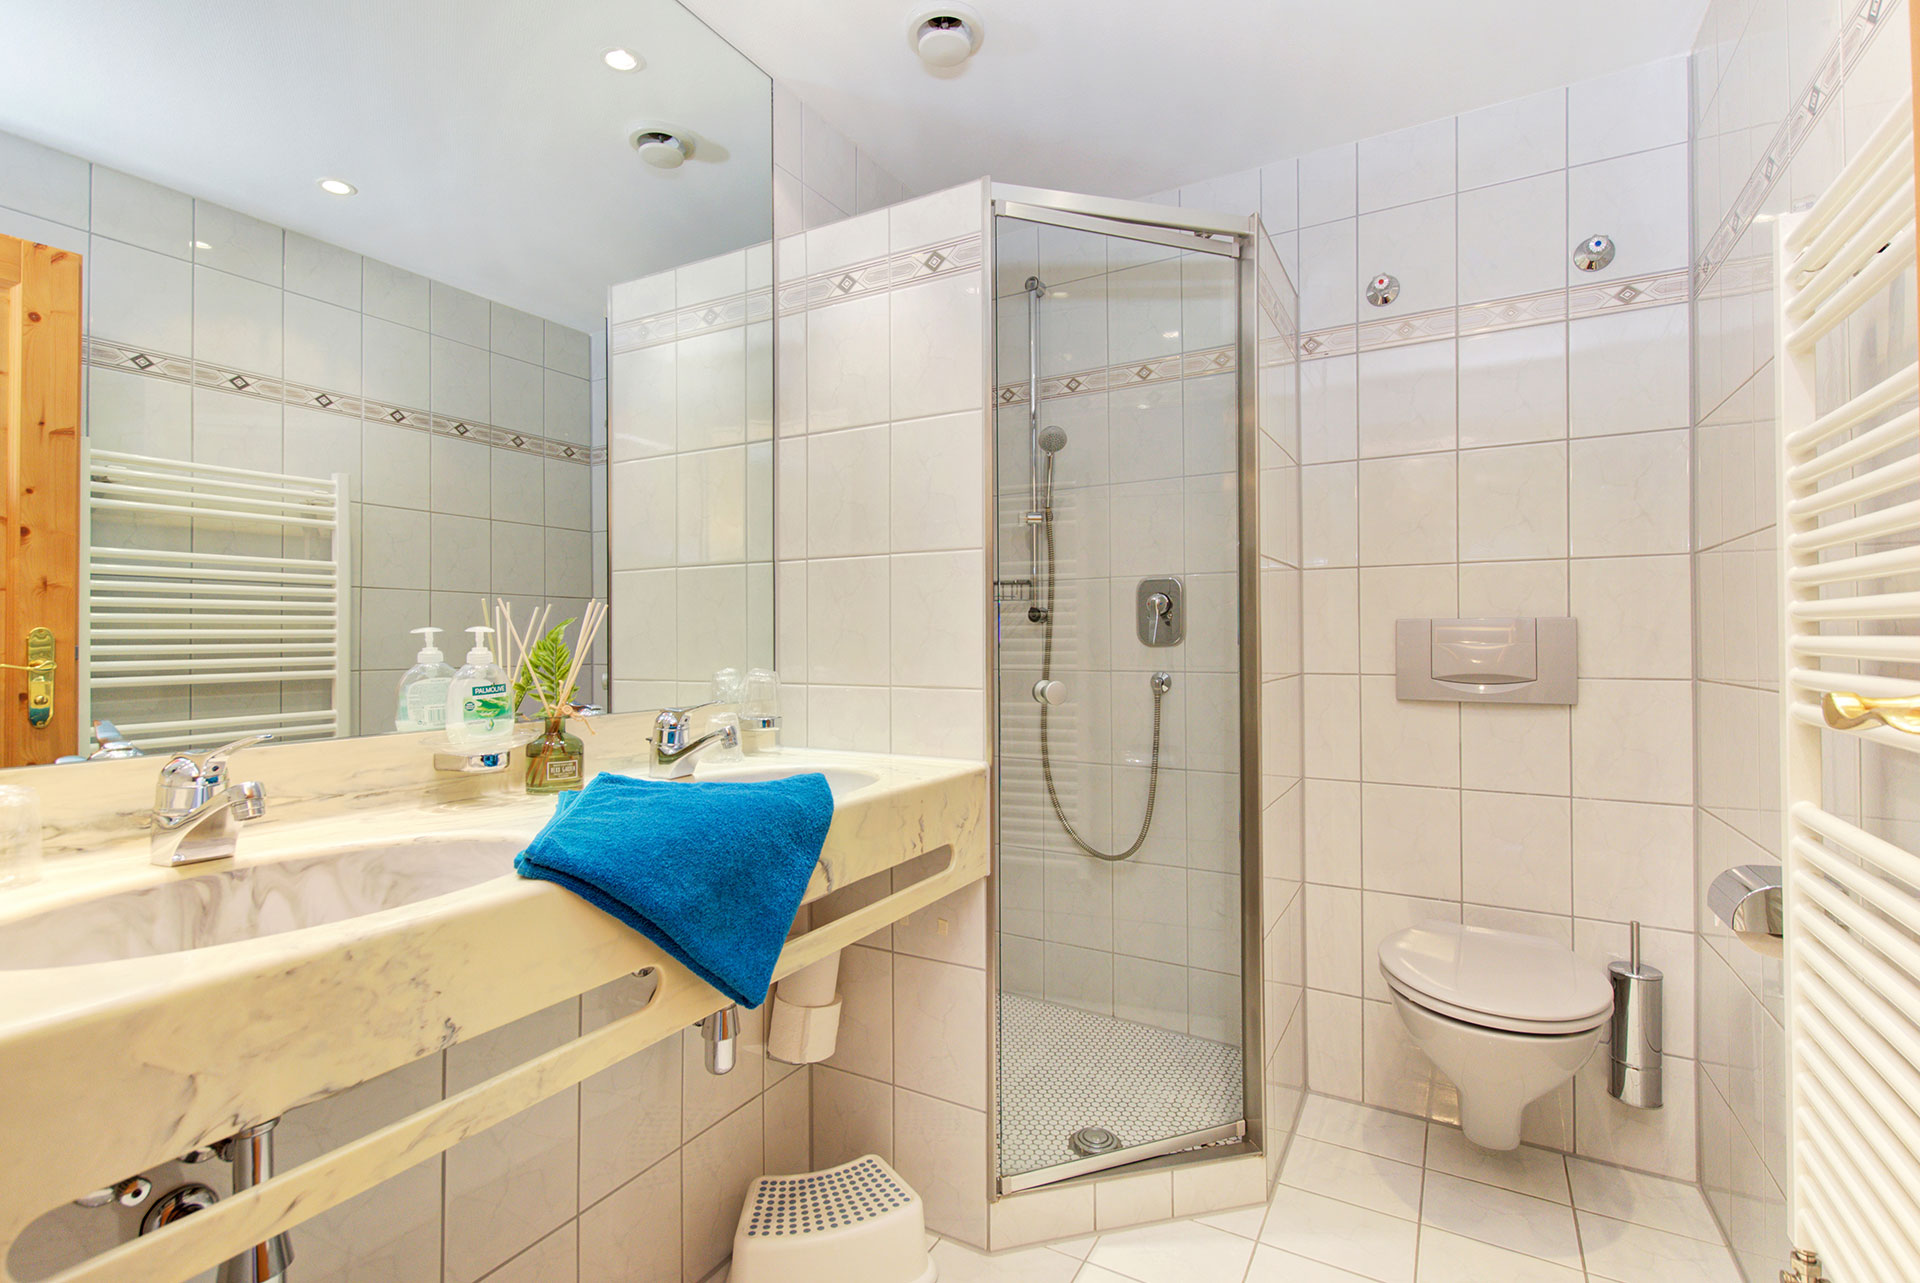 foto ferienwohnung badezimmer mit waschbecken und dusche sowie wc mit tuerkisfarbenem handtuch